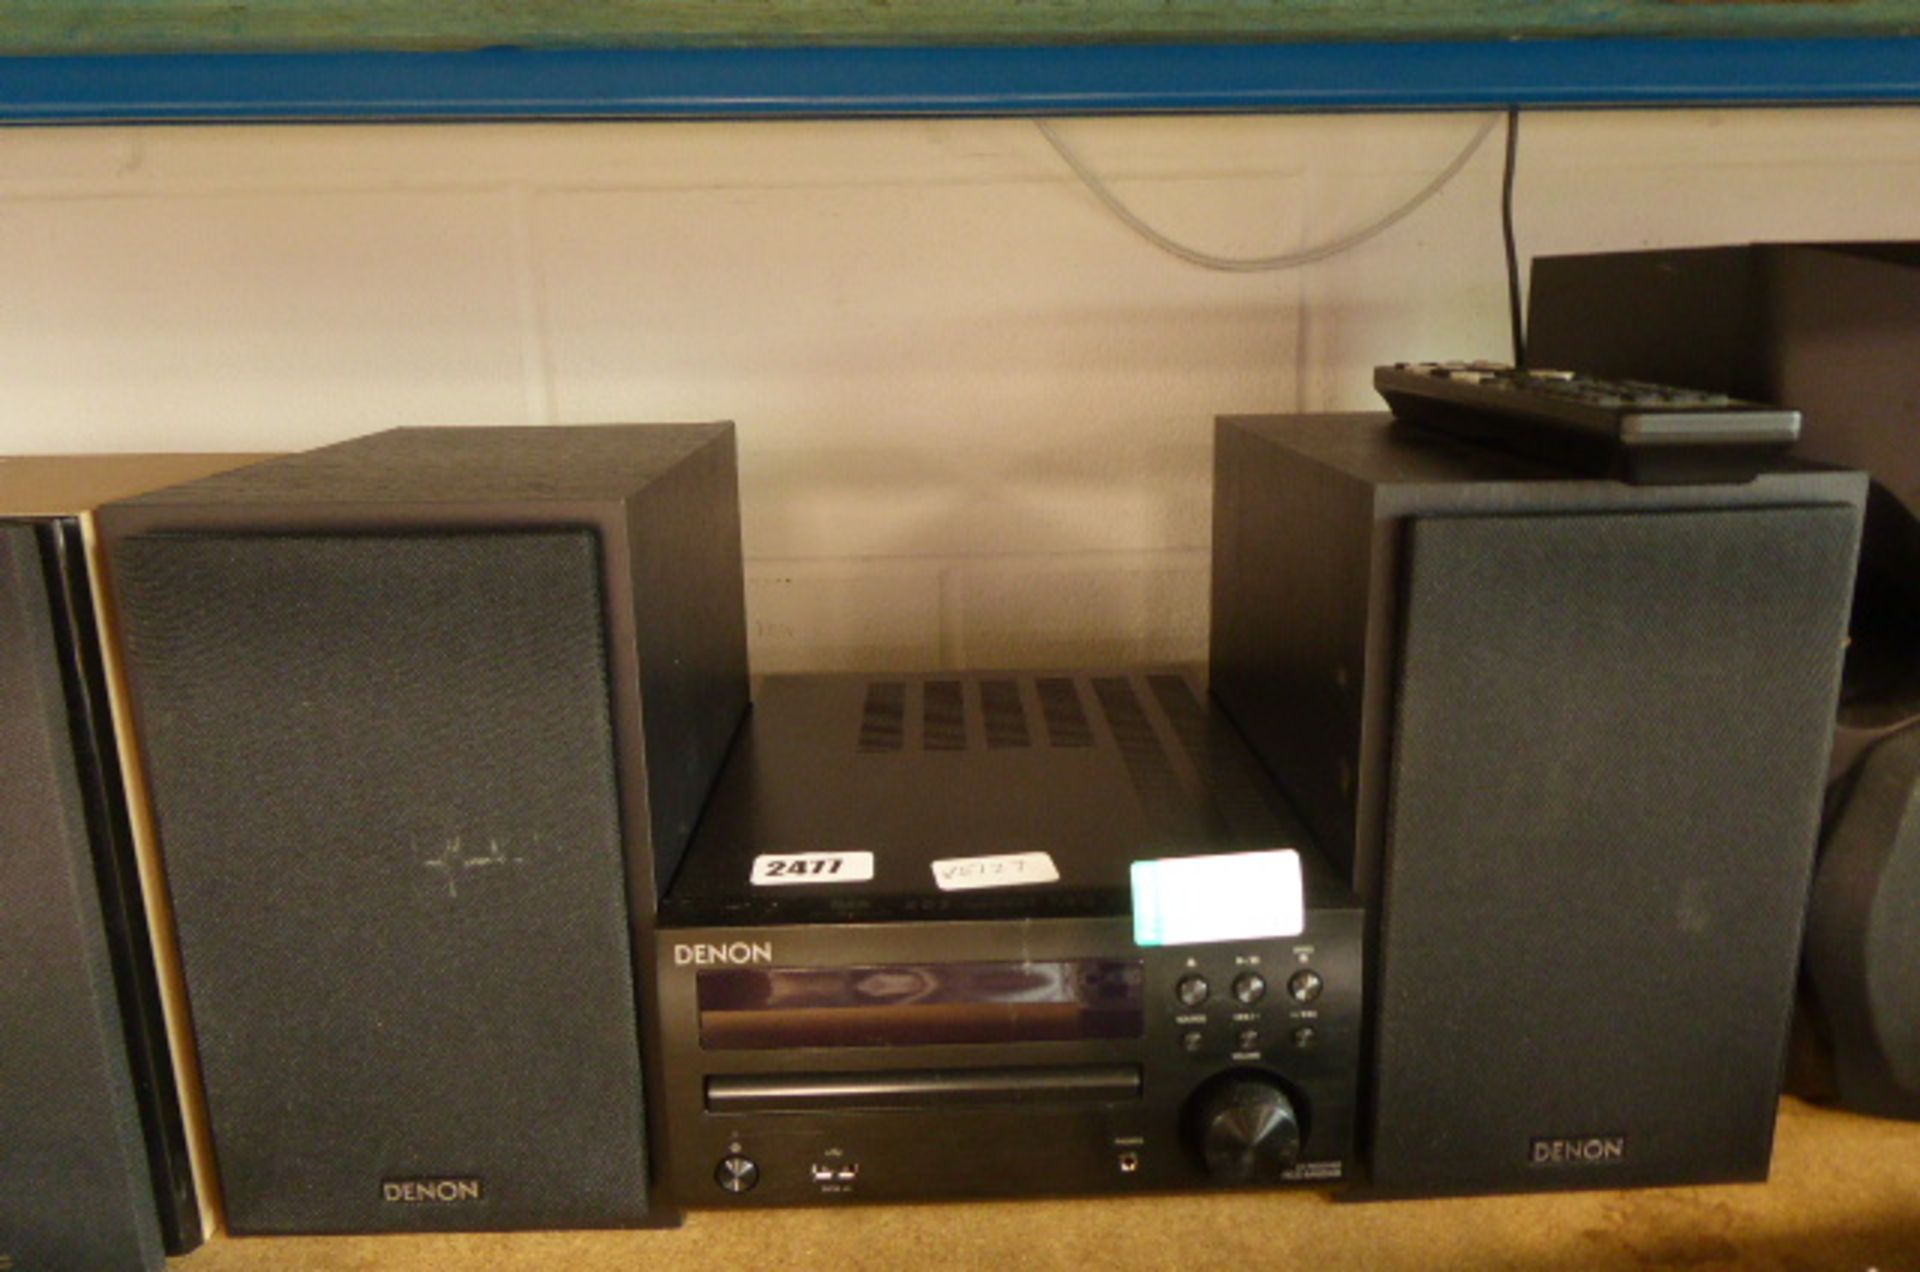 (133) Denon CD receiver with remote control and Denon speakers